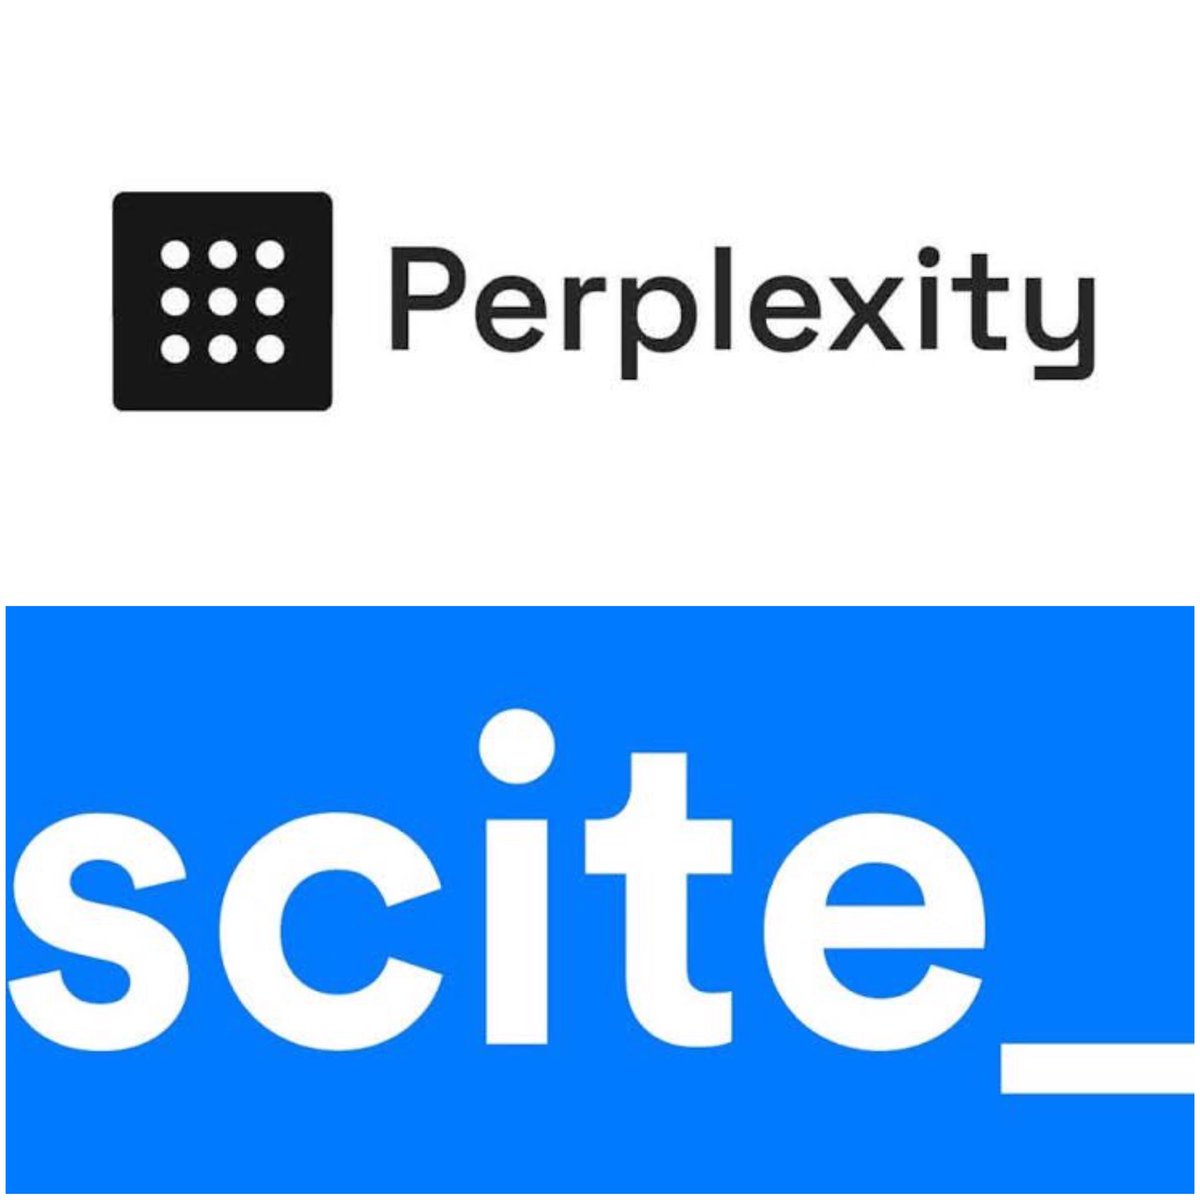 Araştırma yaparken arattığınız konuya ilişkin metinler üreten ve kullandığı kaynaklara atıf veren iki faydalı yapay zeka uygulaması önereyim: 

Perplexity: perplexity.ai
Scite: scite.ai